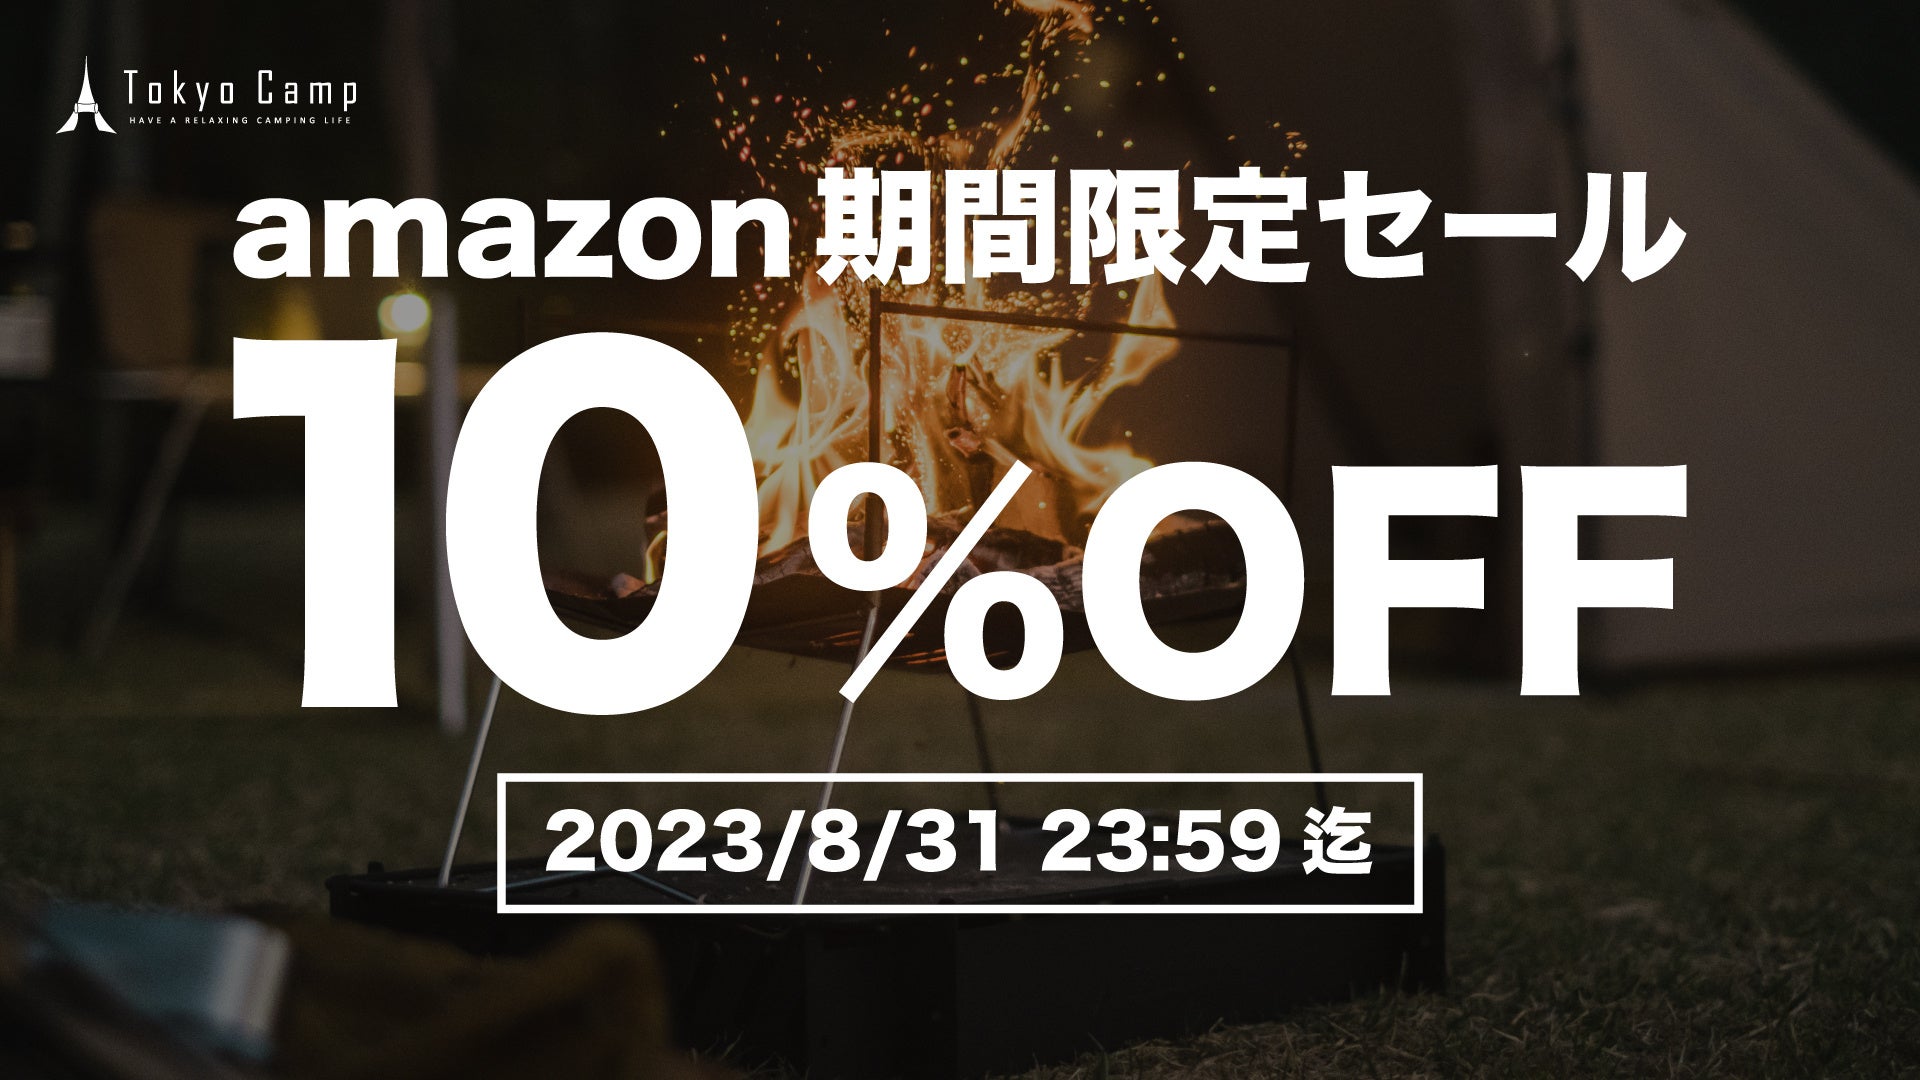 【TokyoCamp】Amazon公式ショップで「焚き火台」を含む対象製品が10%OFFのサブ画像1